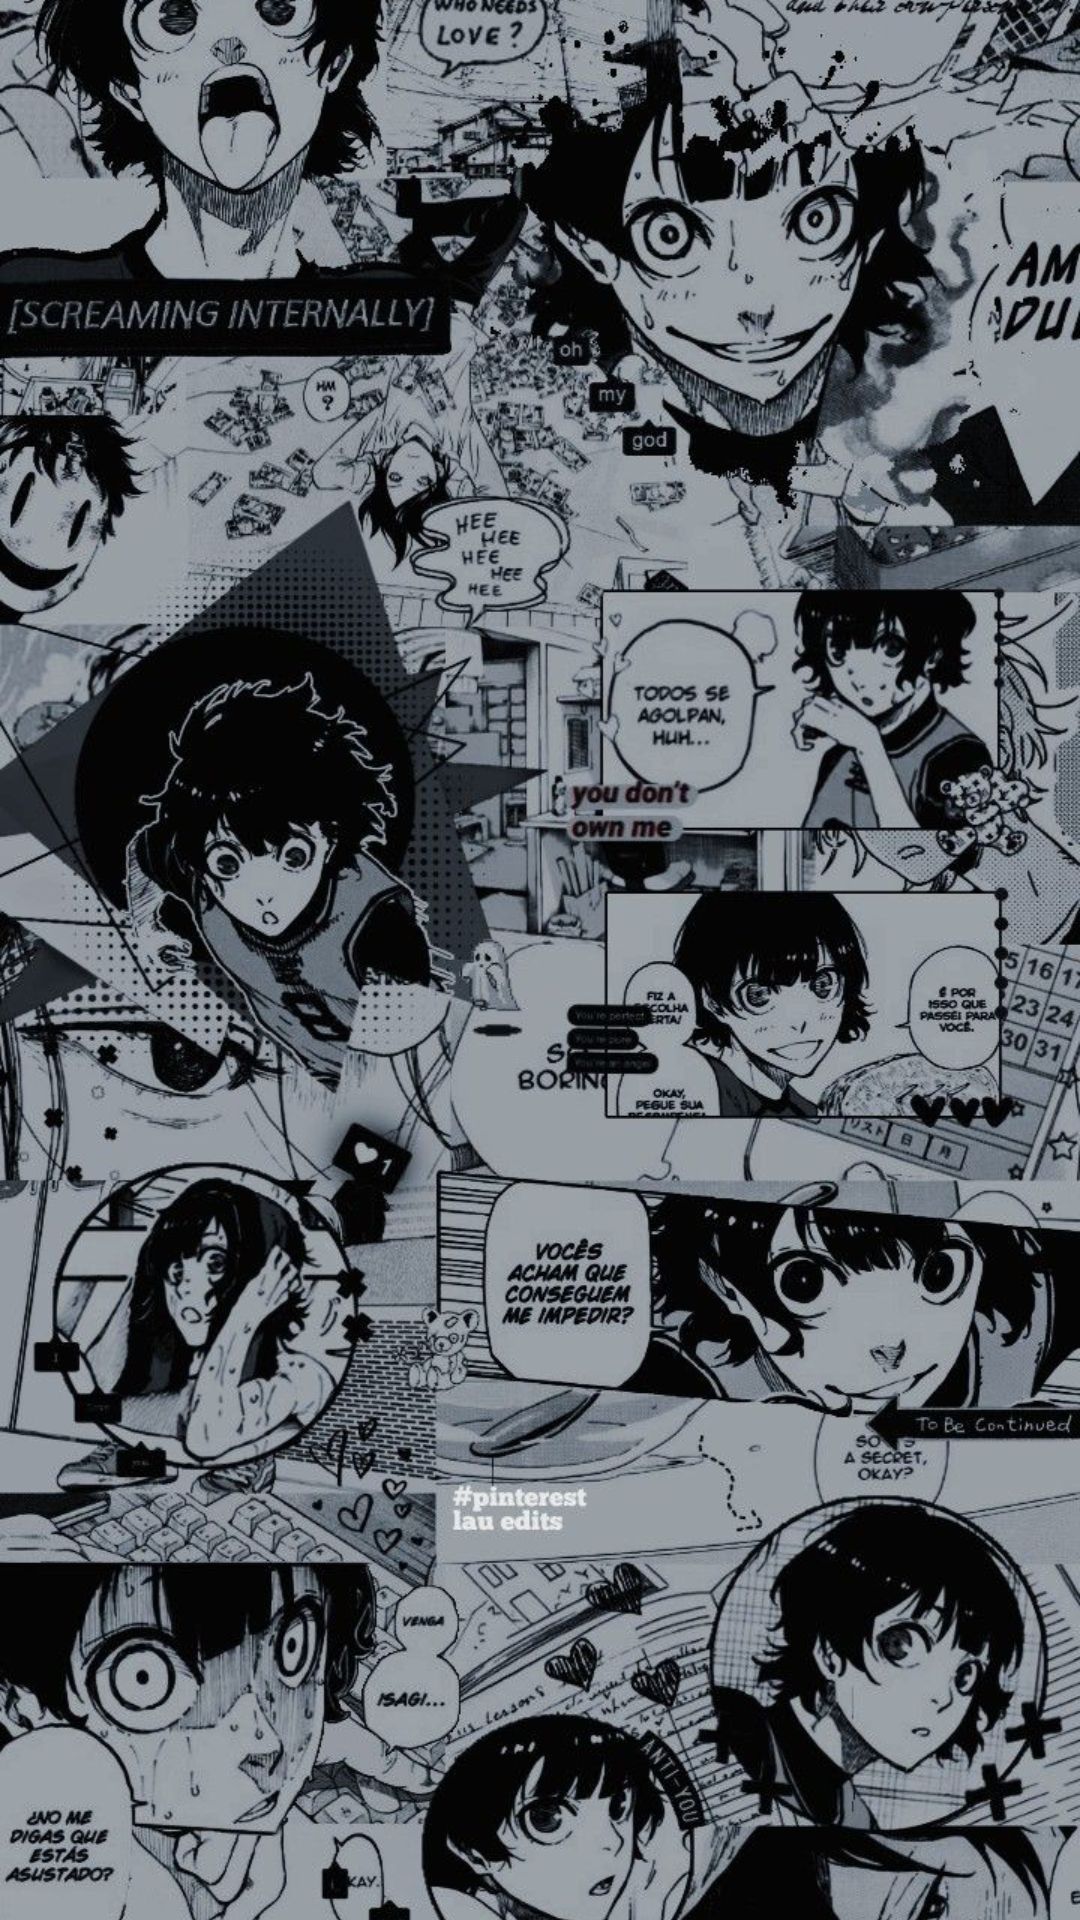 Blue Lock  Locked wallpaper, Anime wallpaper, Black clover anime